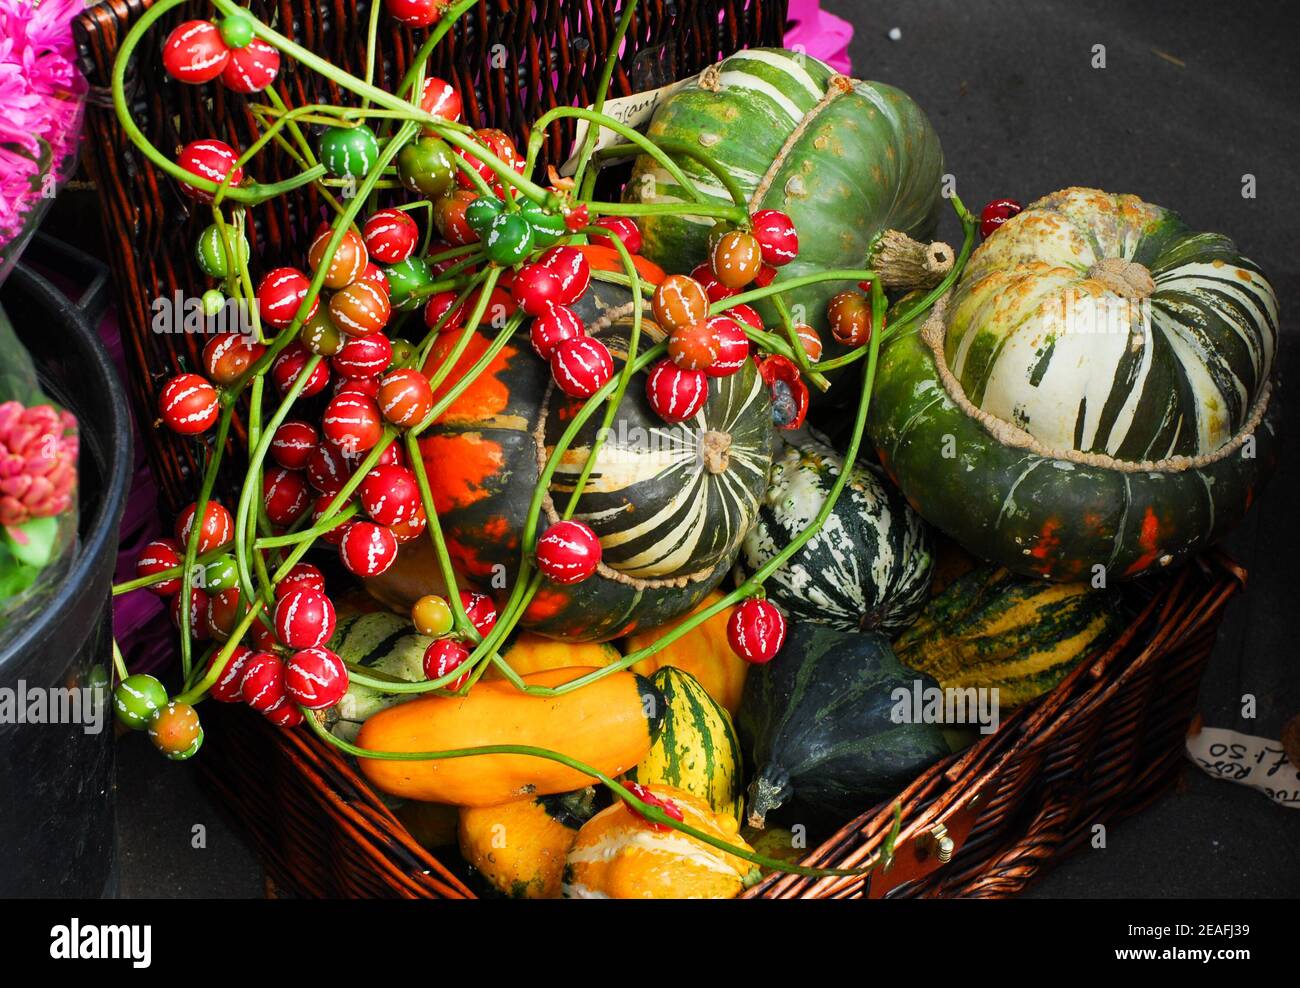 Basket of Exotic, Colourful Squashes, Fruit and Veg Shop, Broadway Market, Hackney, London Stock Photo